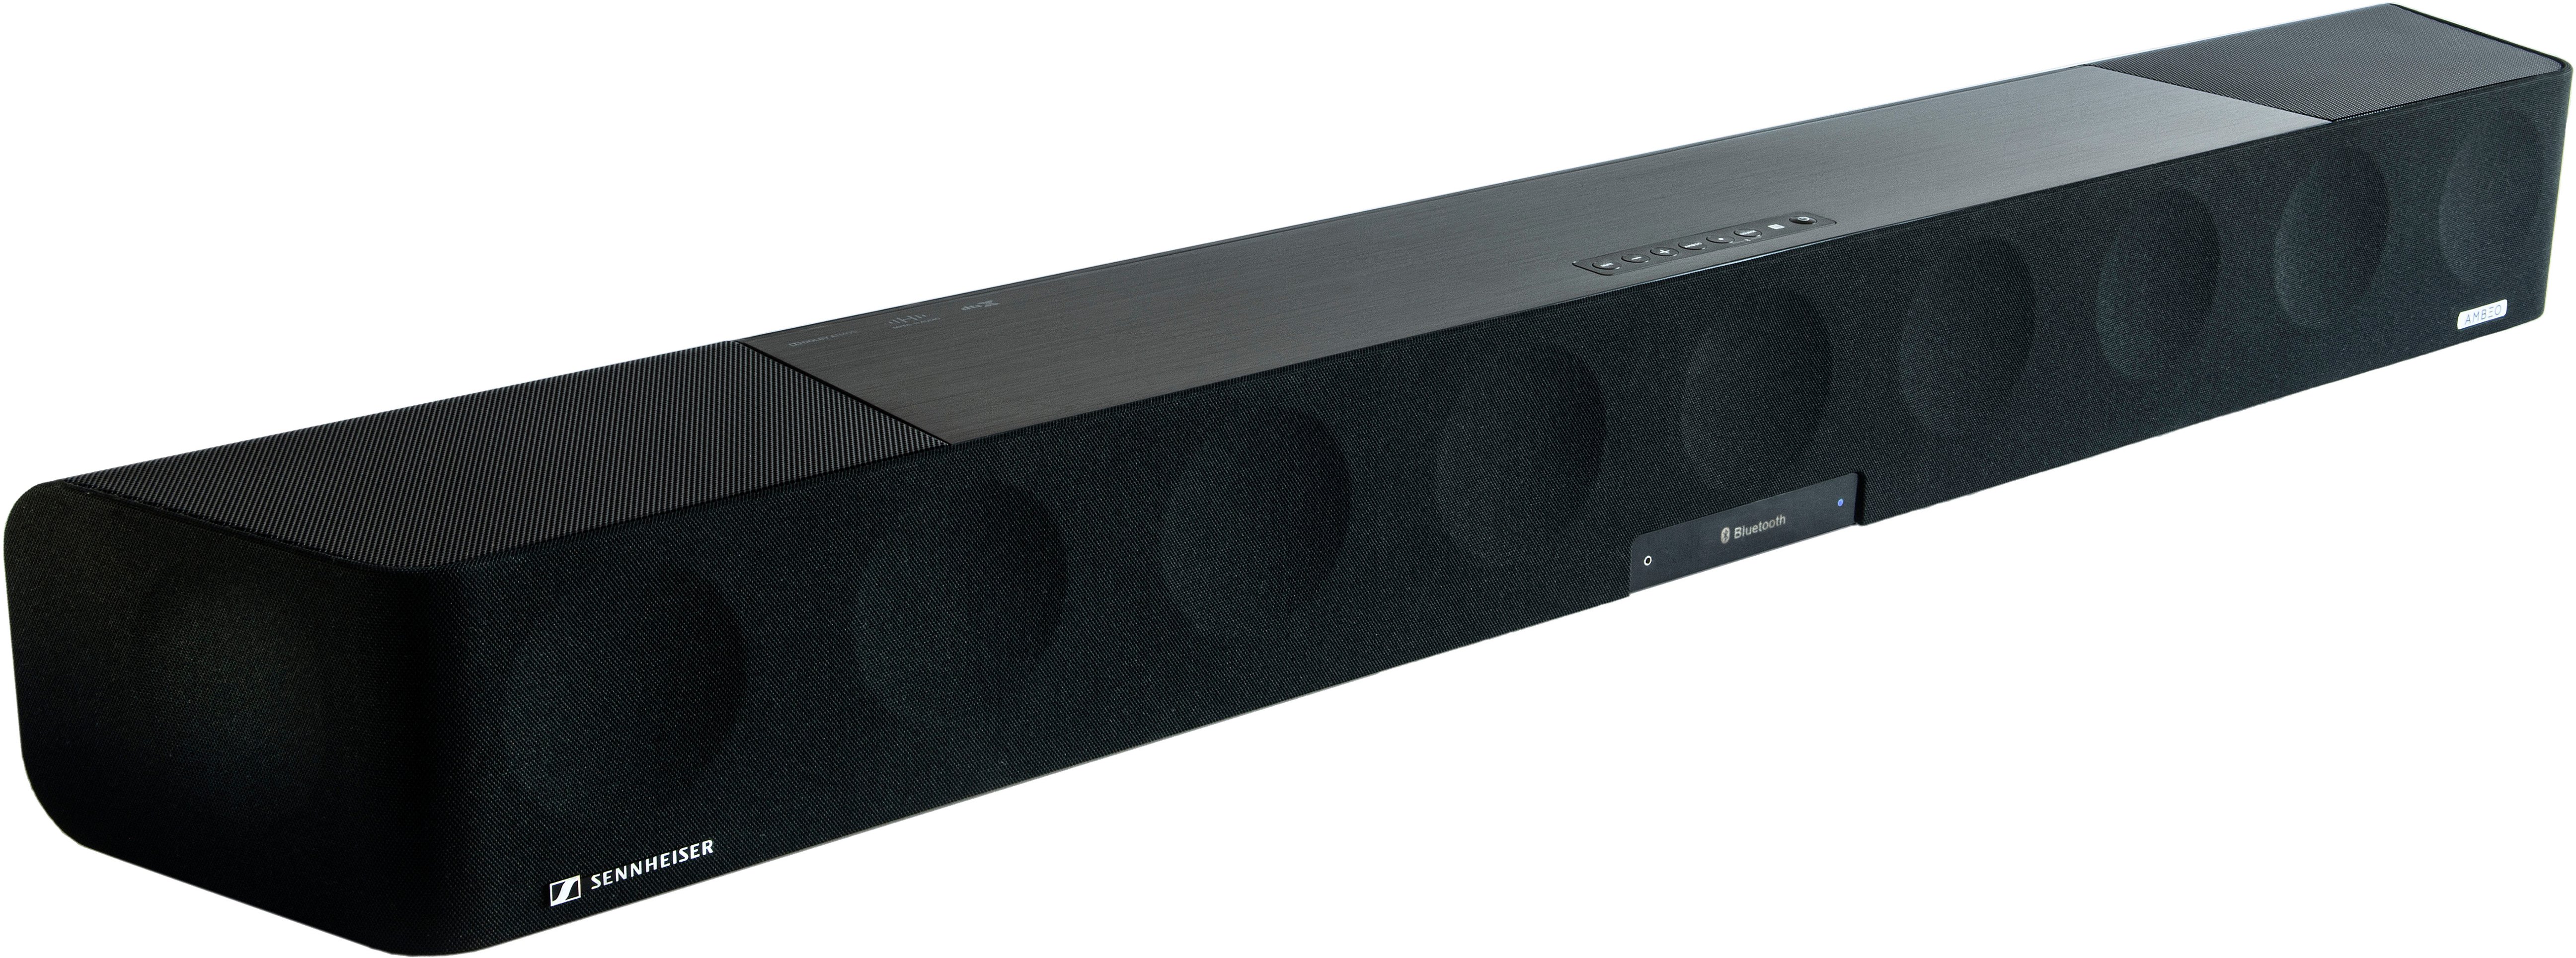 Sennheiser - 5.1.4-Channel AMBEO Soundbar with Dolby Atmos/DTS:X - Black